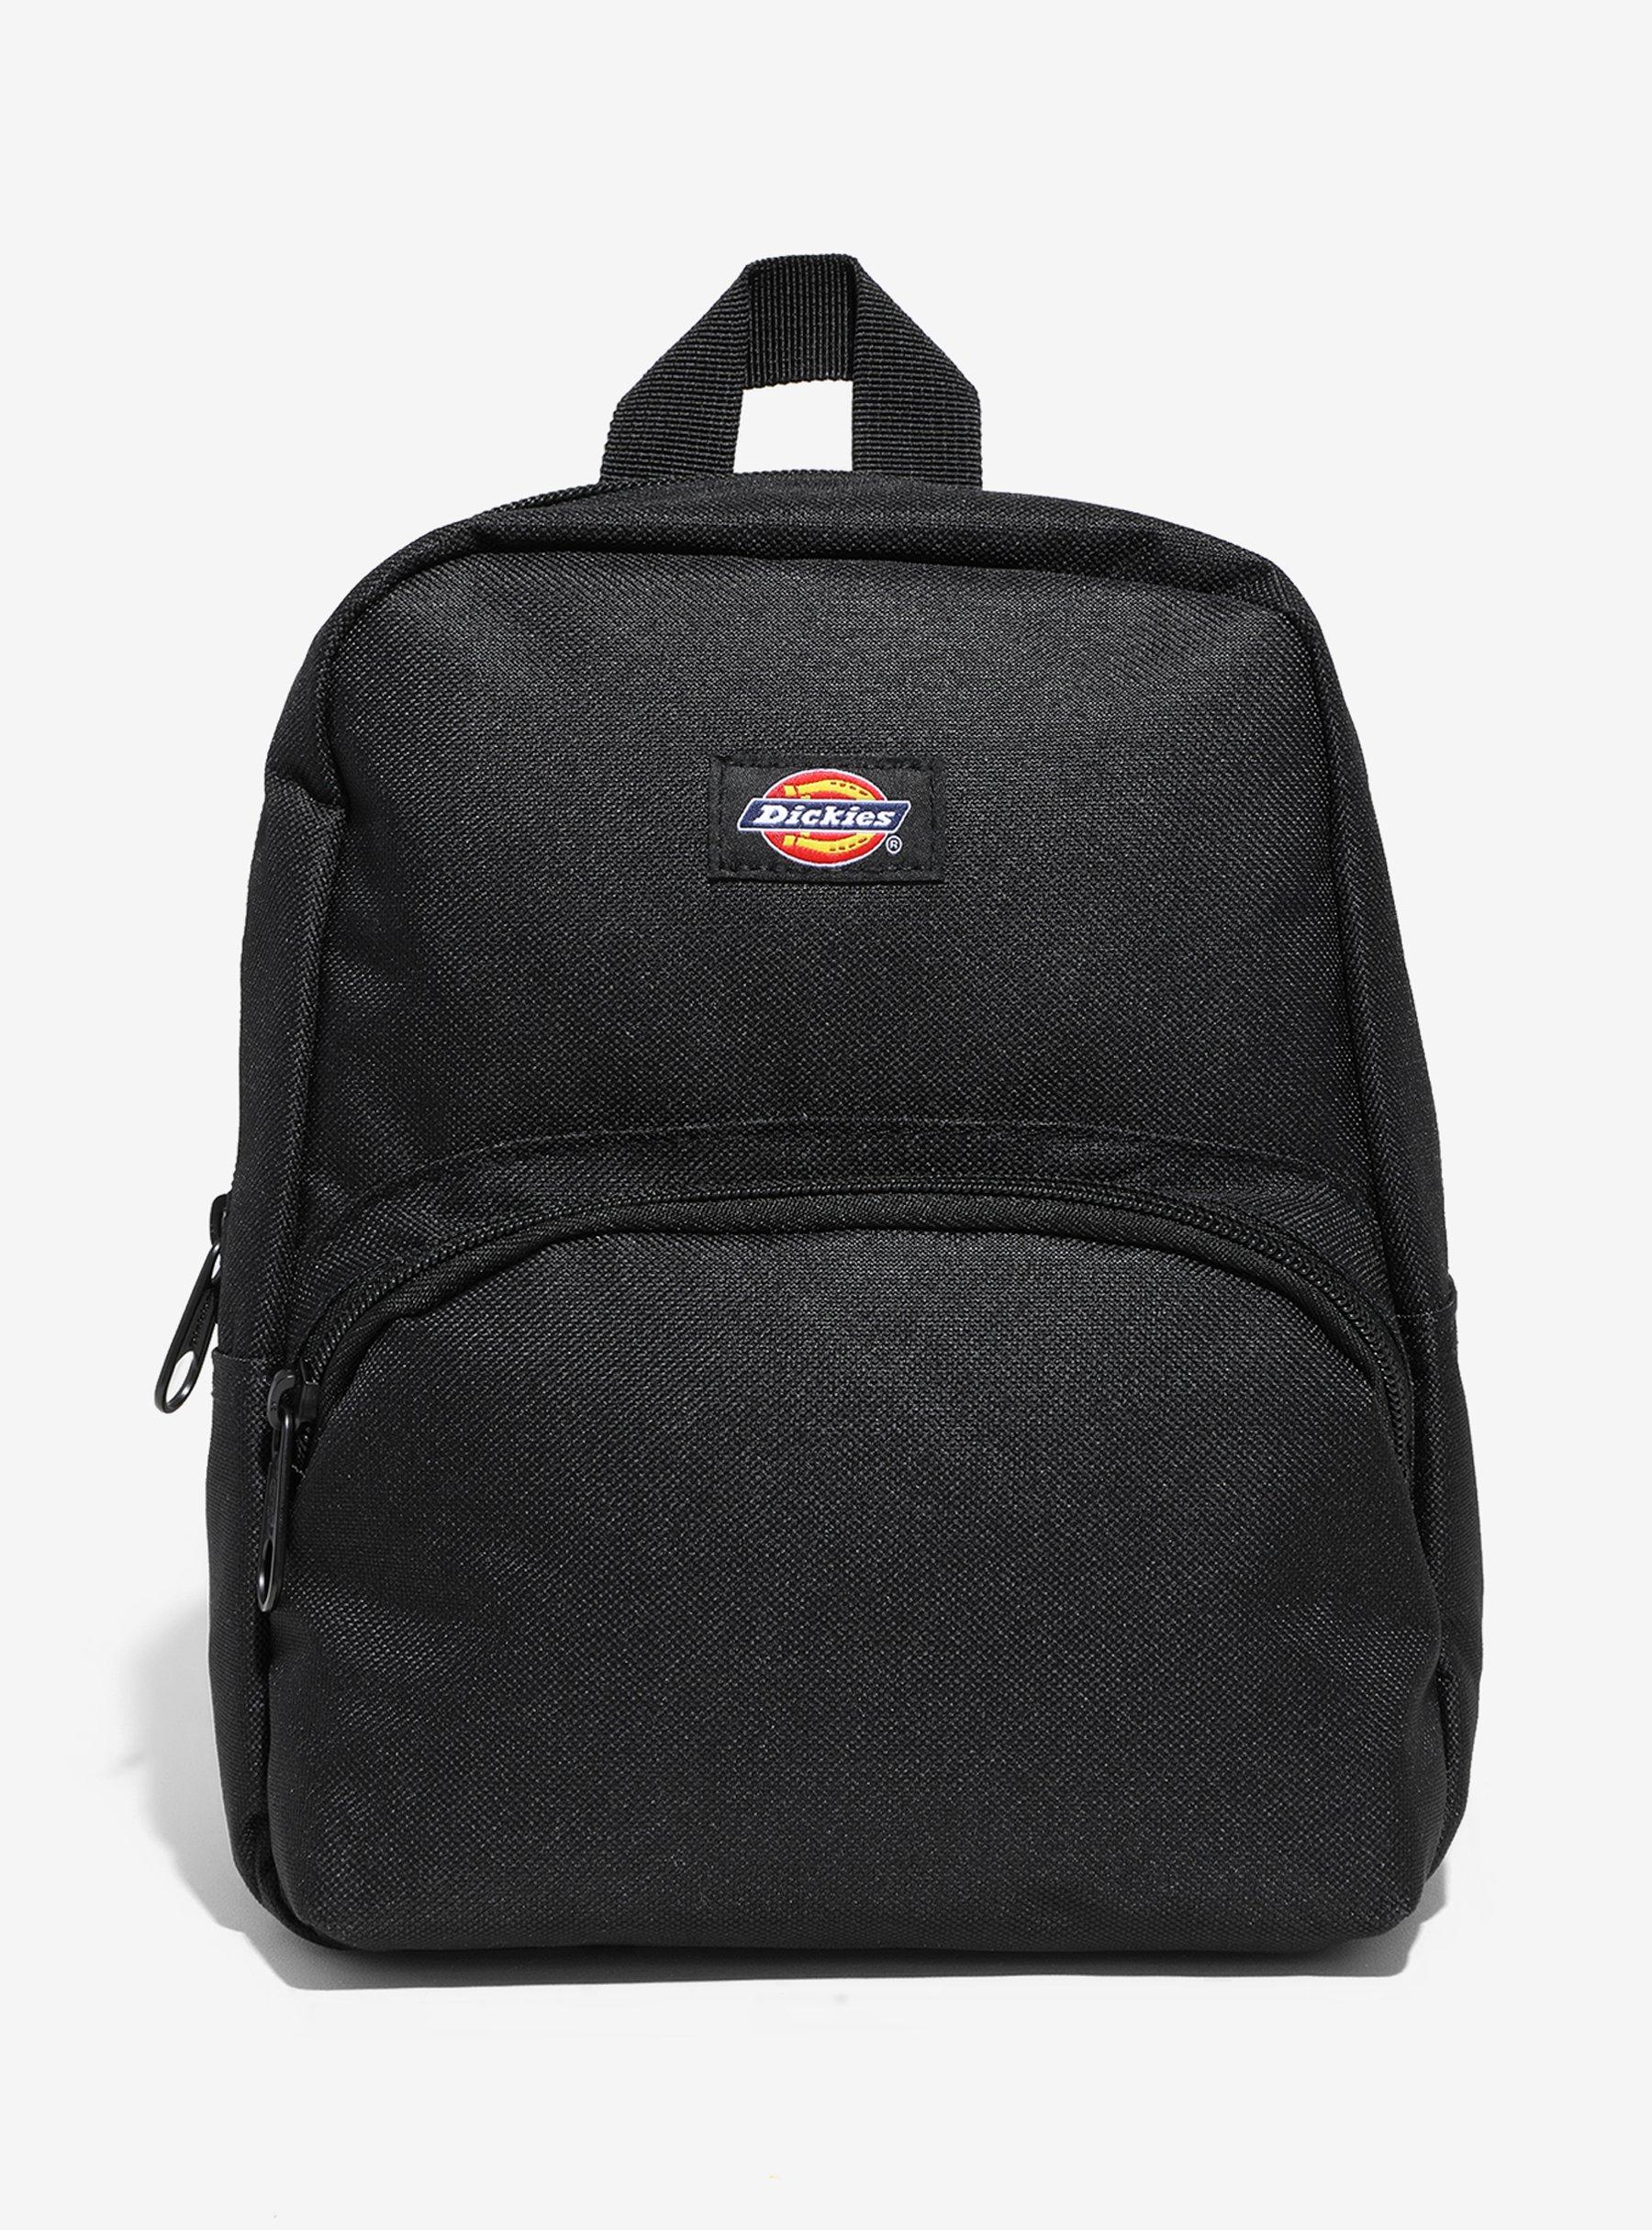 Dickies Black Mini Backpack, , hi-res